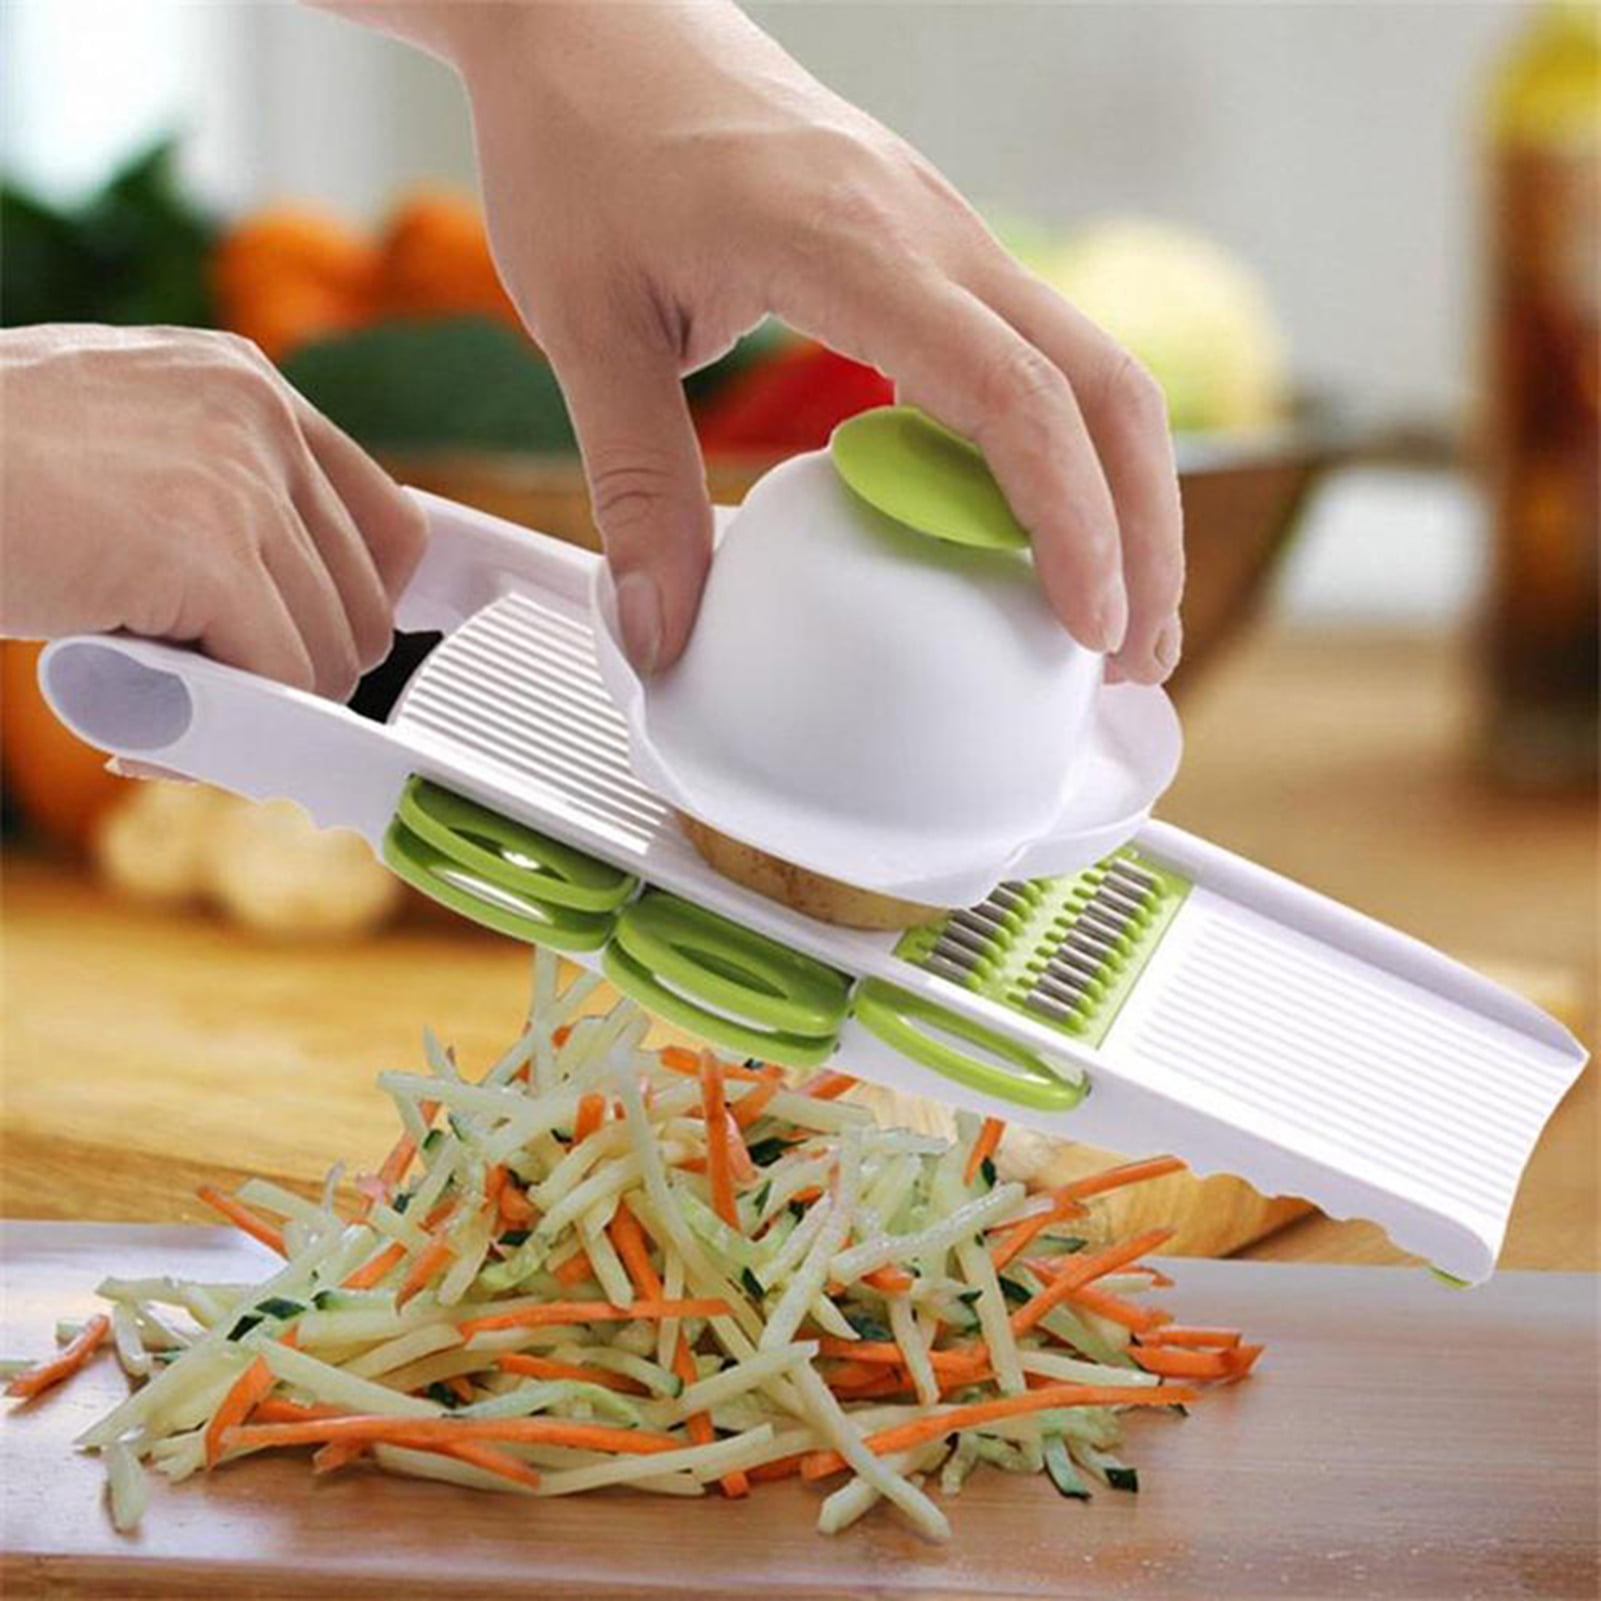 MZLXDEDIAN Multi-function Vegetable Slicer , Food Slicer 6-in-1 Vegetable  Manual Grater, Potato Chopper Veggie Spiralizer, Slicers for Fruits and